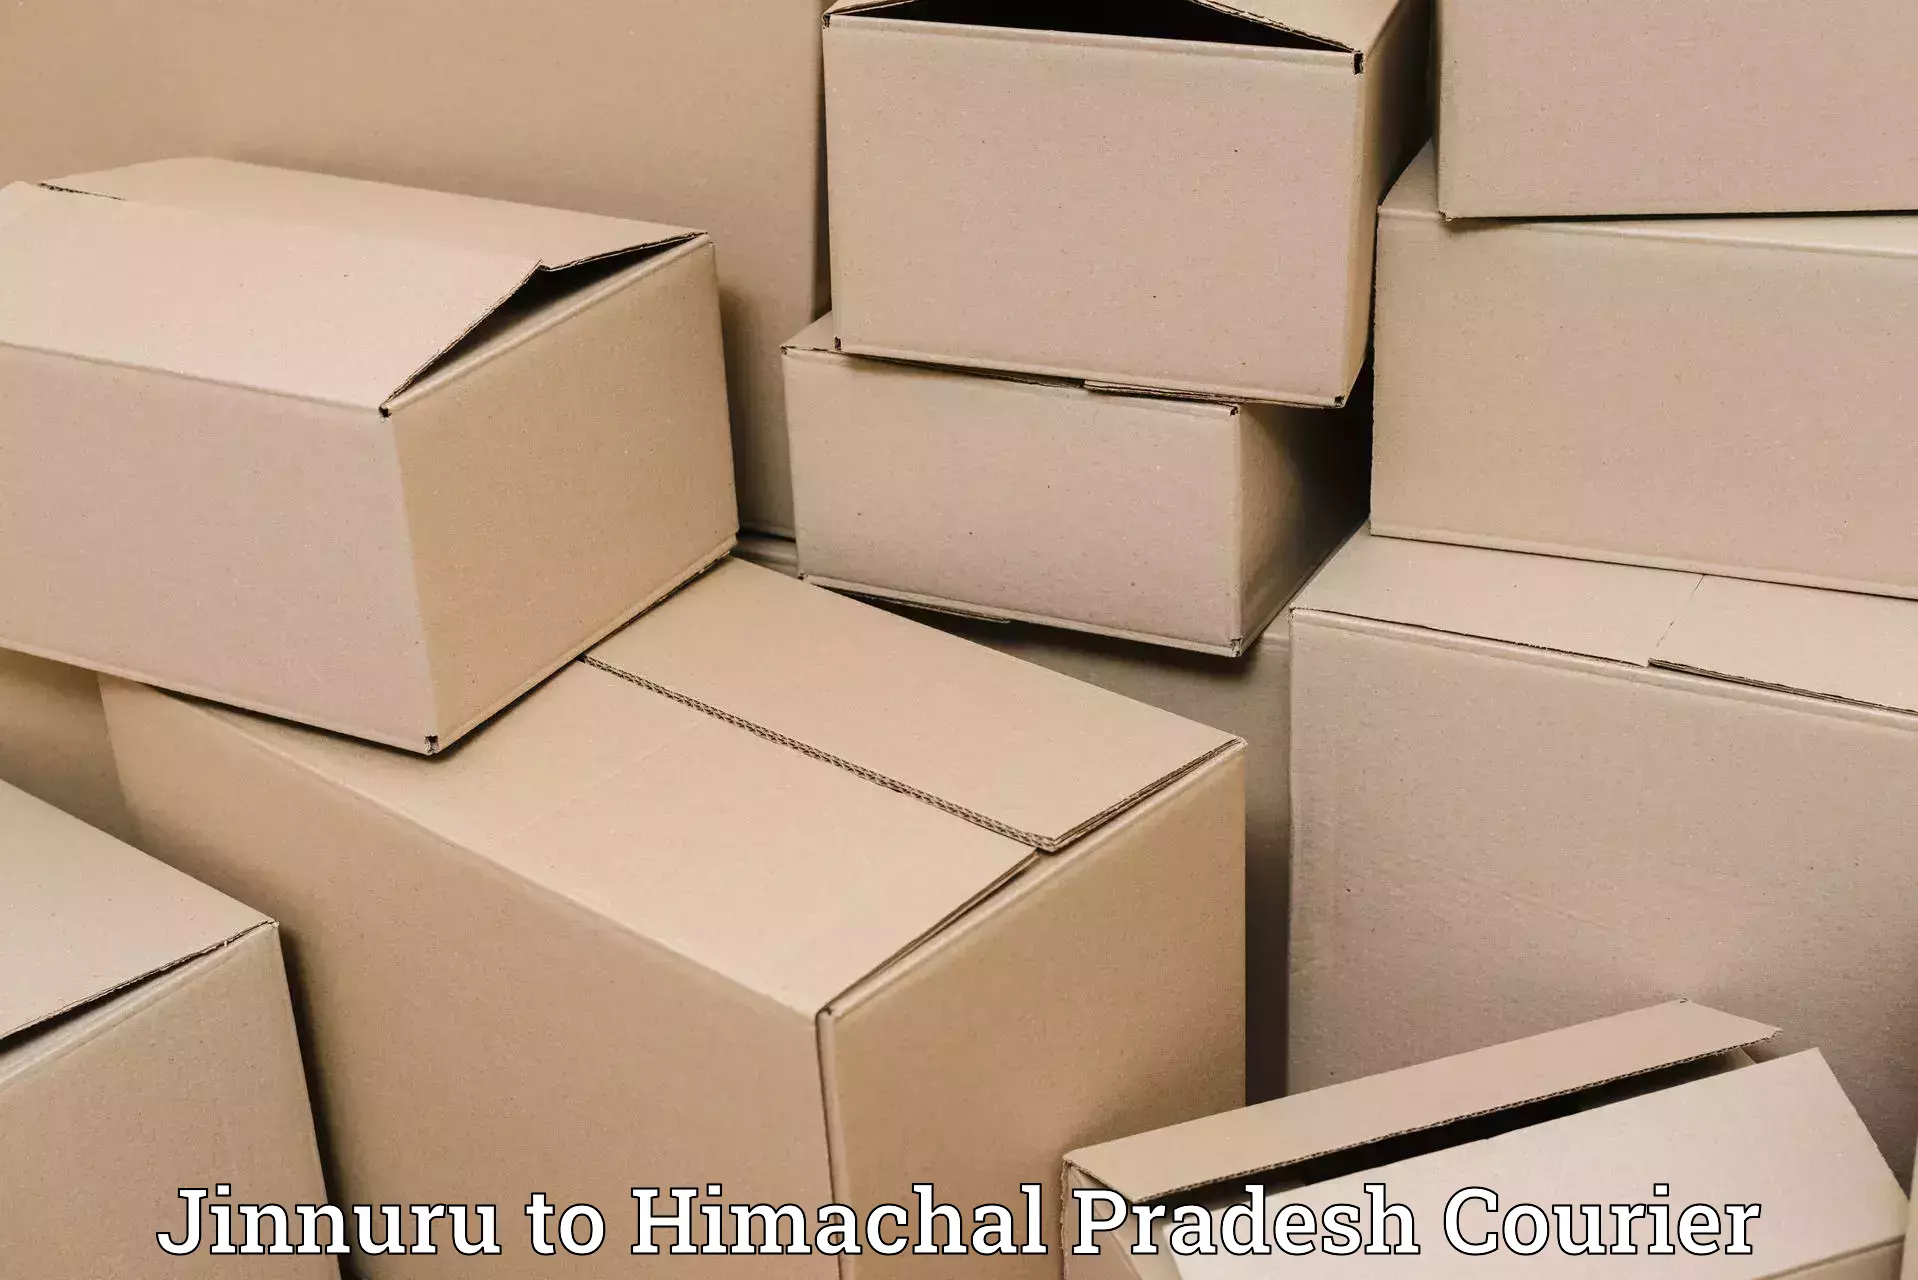 Efficient parcel service Jinnuru to Nerwa